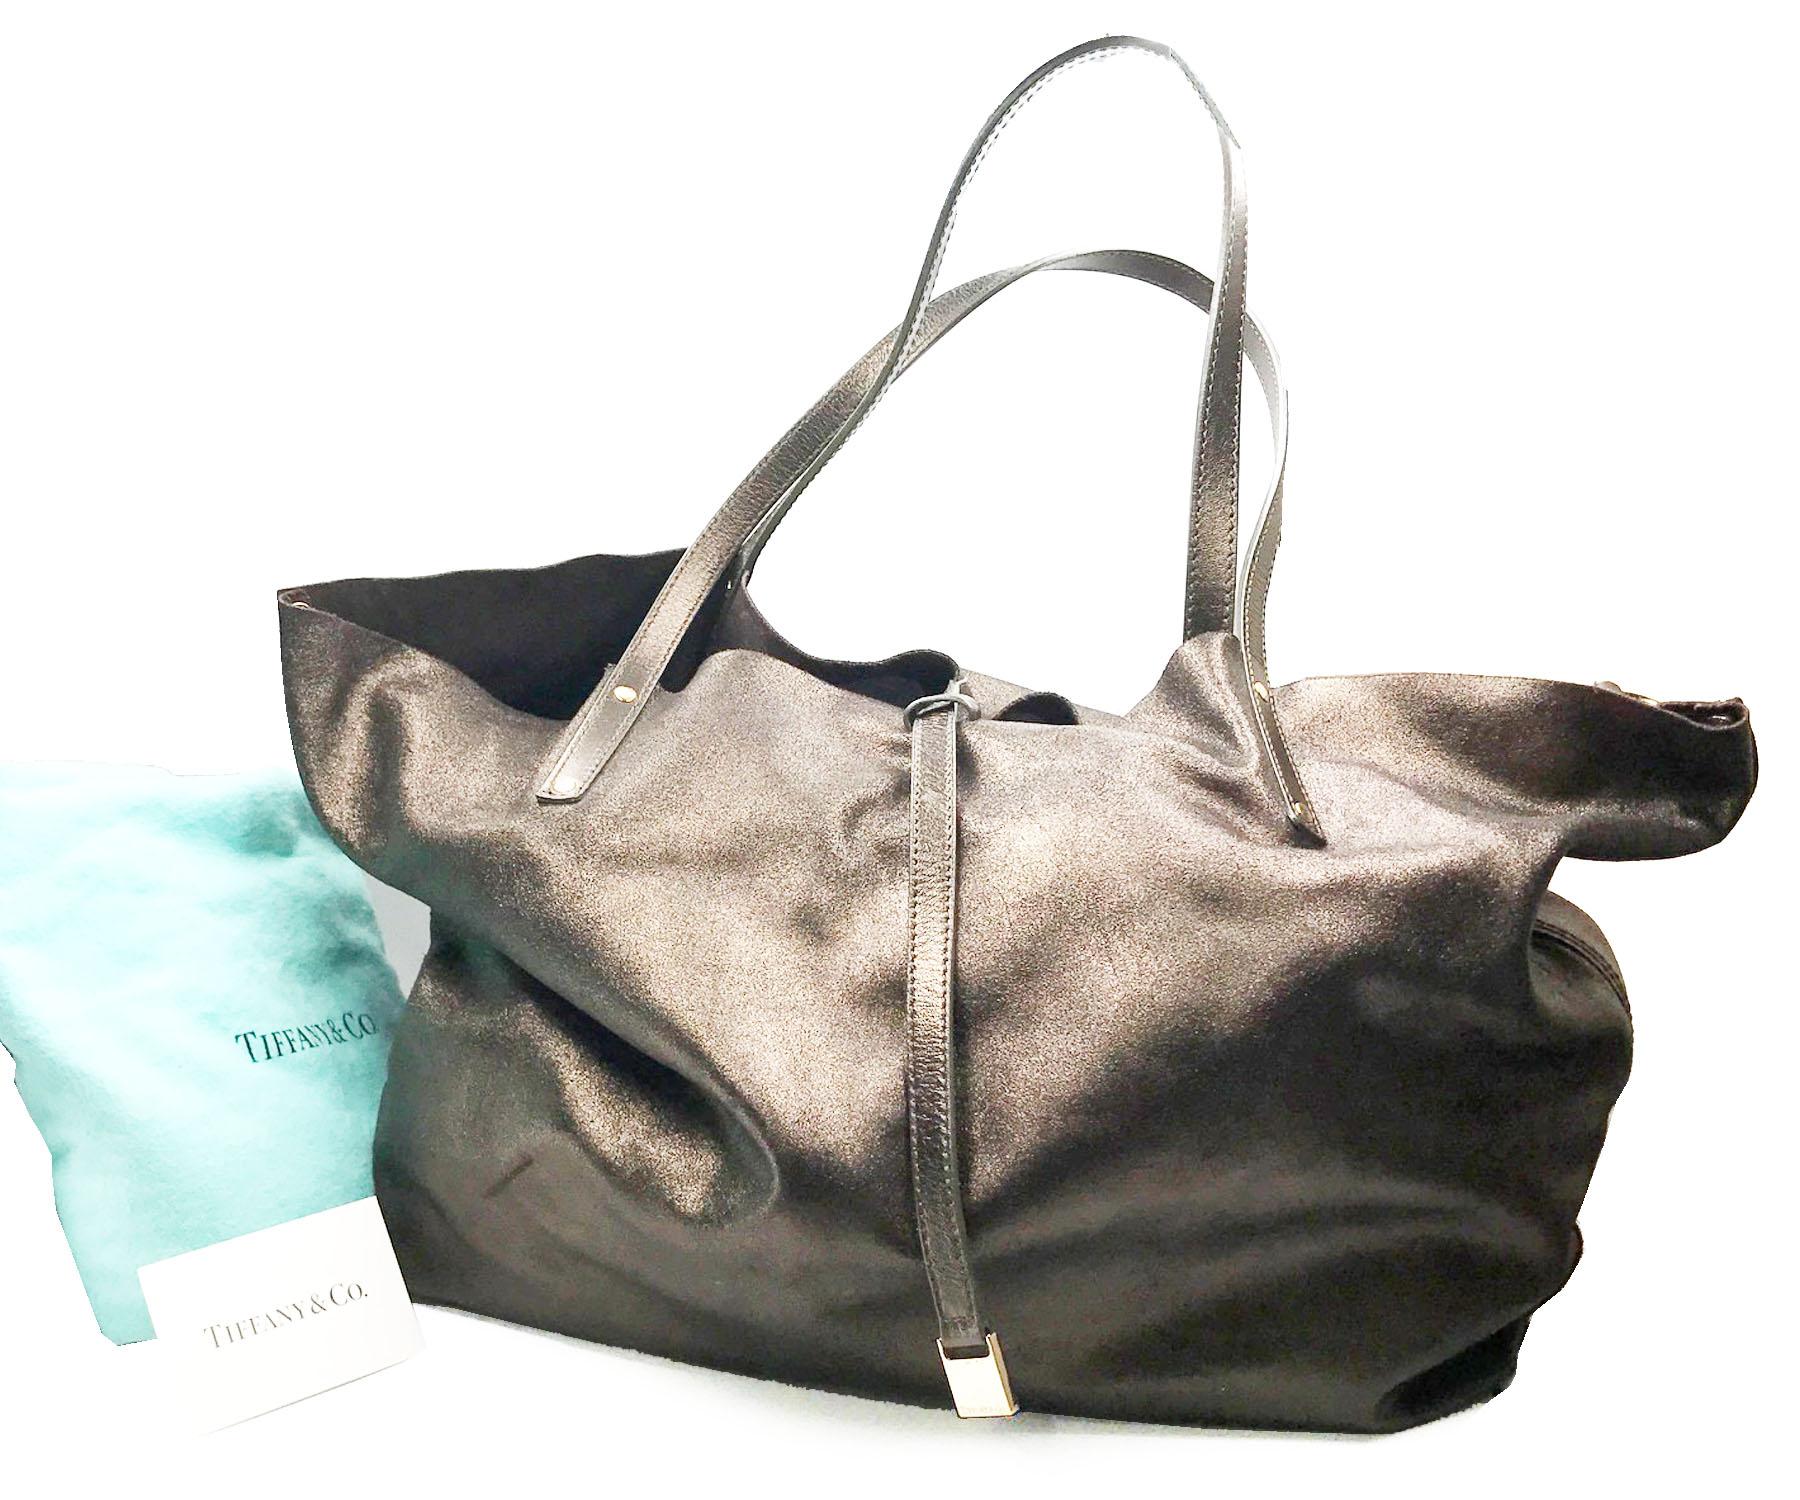 Tiffany & Co 2 Way Bronze Brown Suede Large Soft Tote Shoulder Bag

*Fabriqué en Italie
*Livré avec sac à poussière d'origine et pochette détachable

-Environ 12,5 x 9,5 x 6,5 pouces
-Pochette - environ 8.75″ x 5″
-A porter dans les deux sens - côté